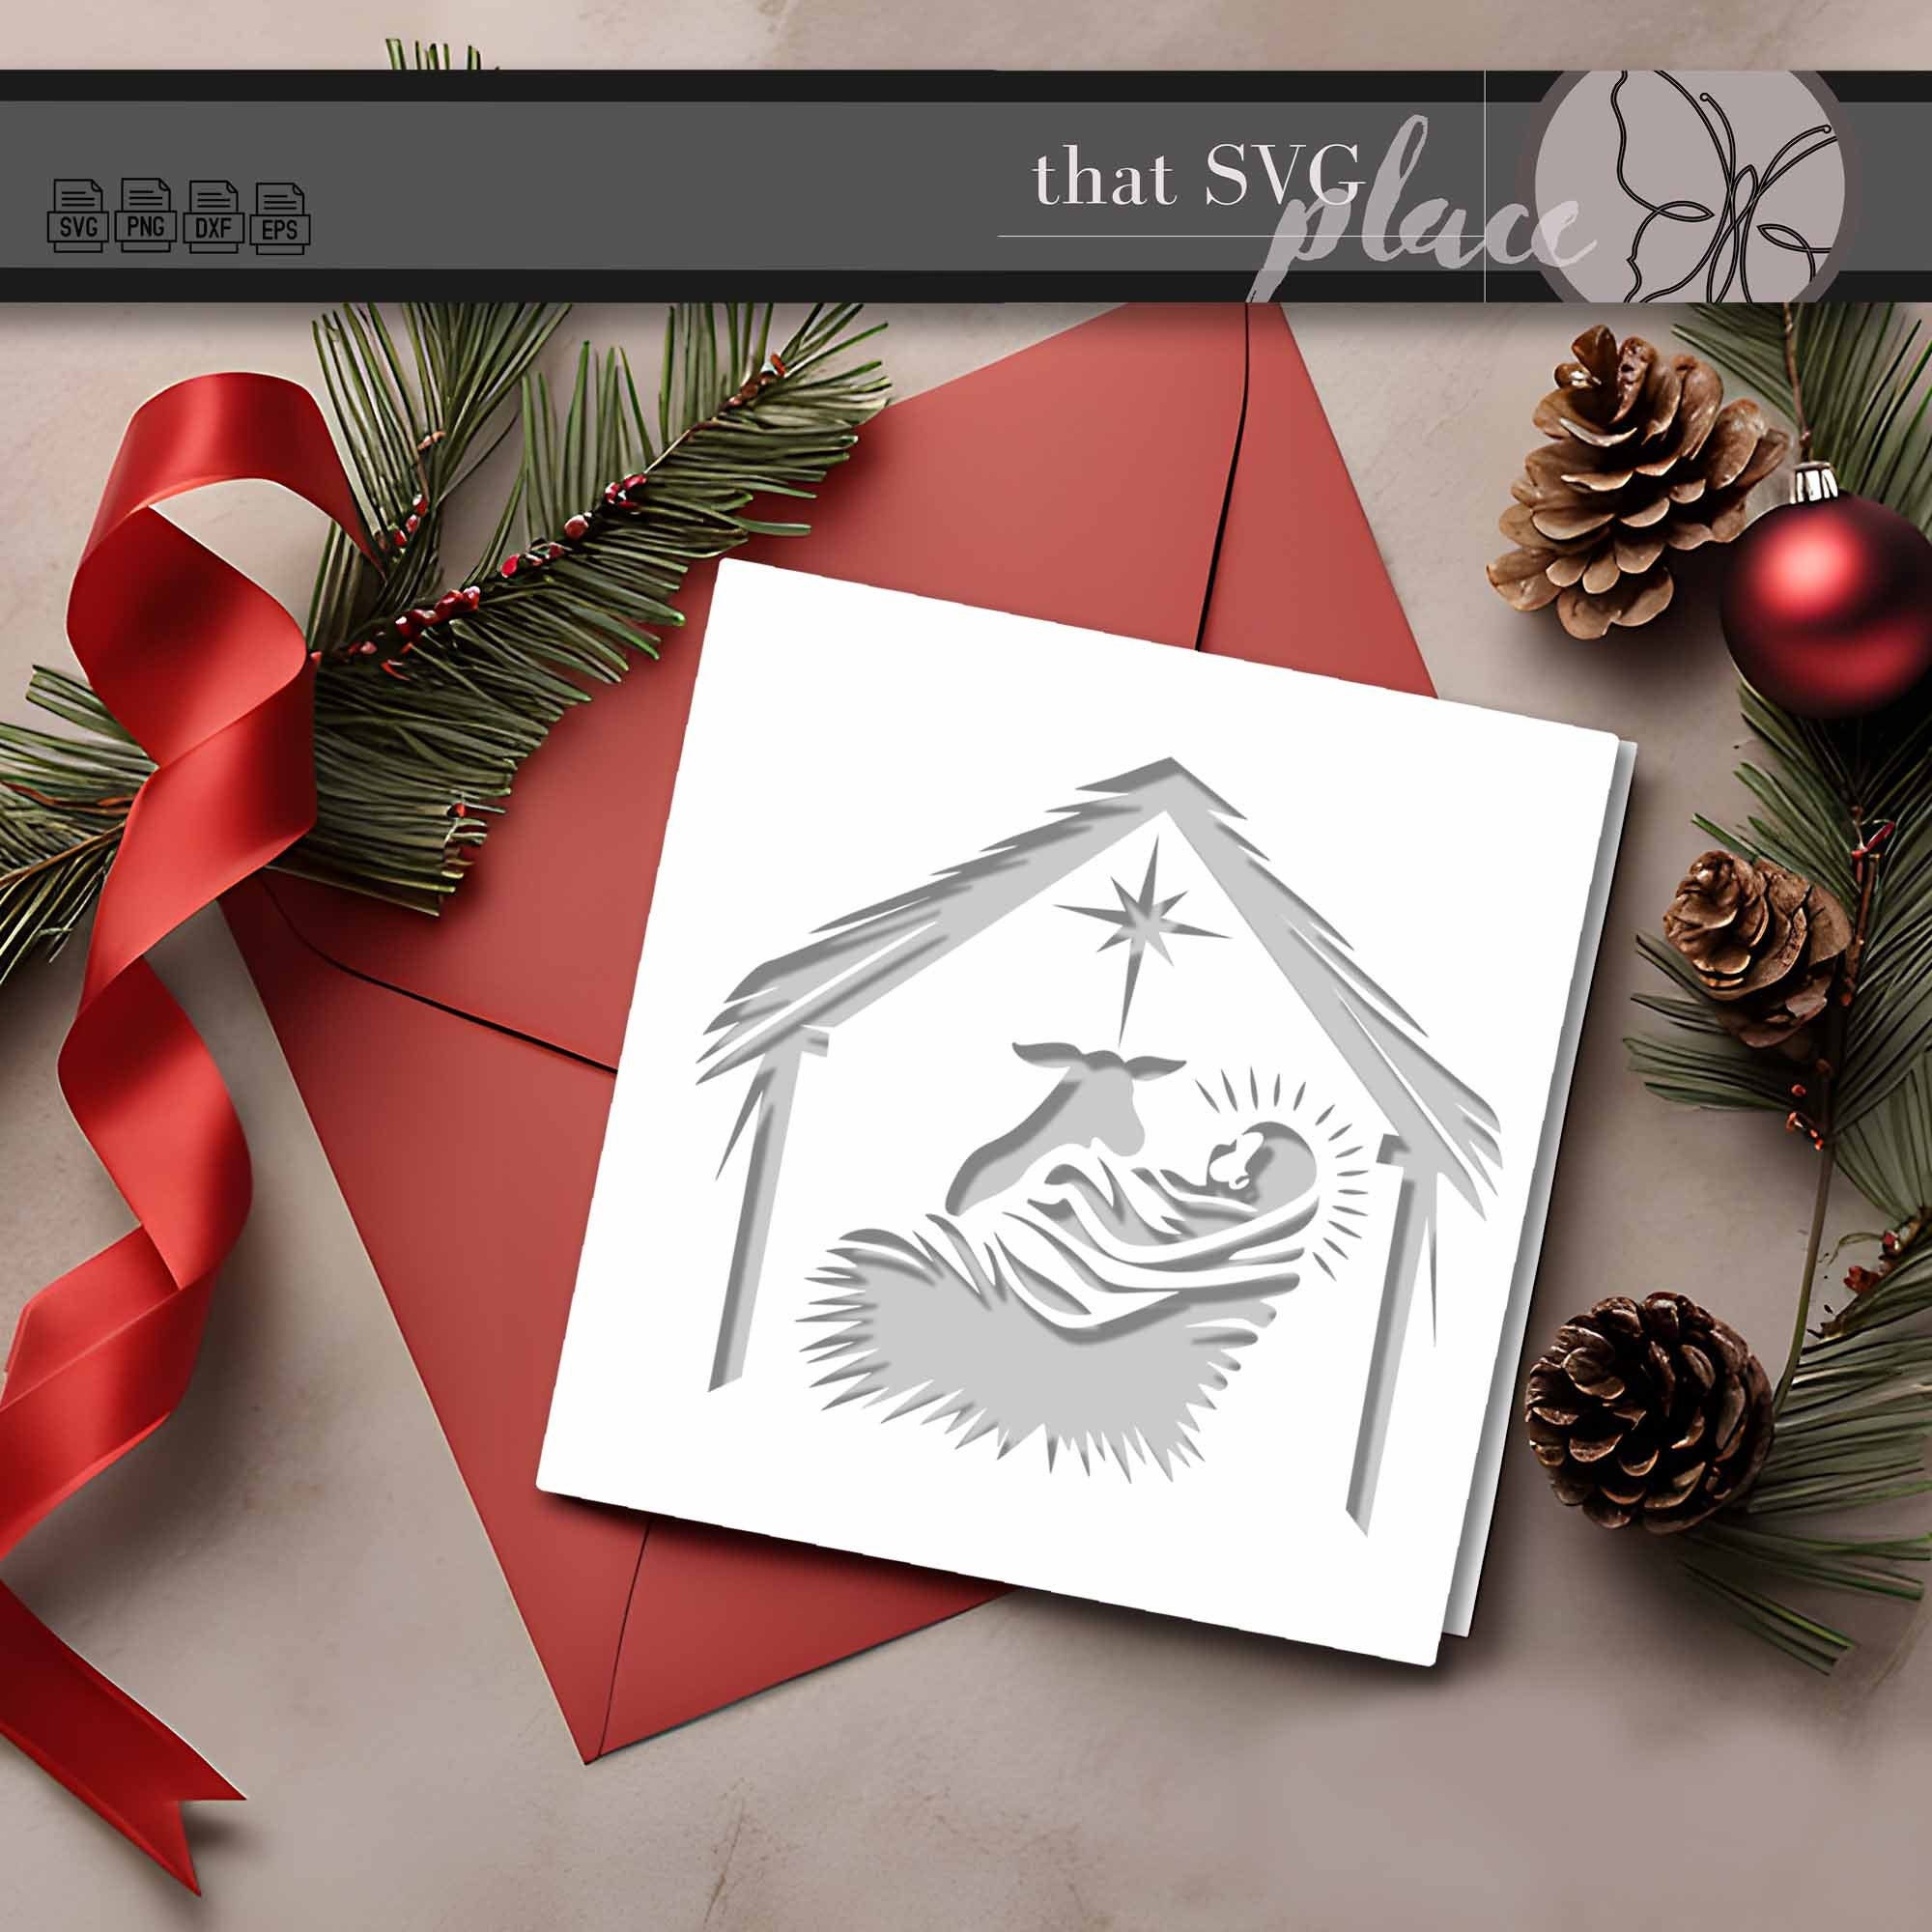 Nativity Baby Jesus Christmas Card SVG, Nativity Scene SVG, Manger SVG, True Story Silhouette Cricut Cut File Svg